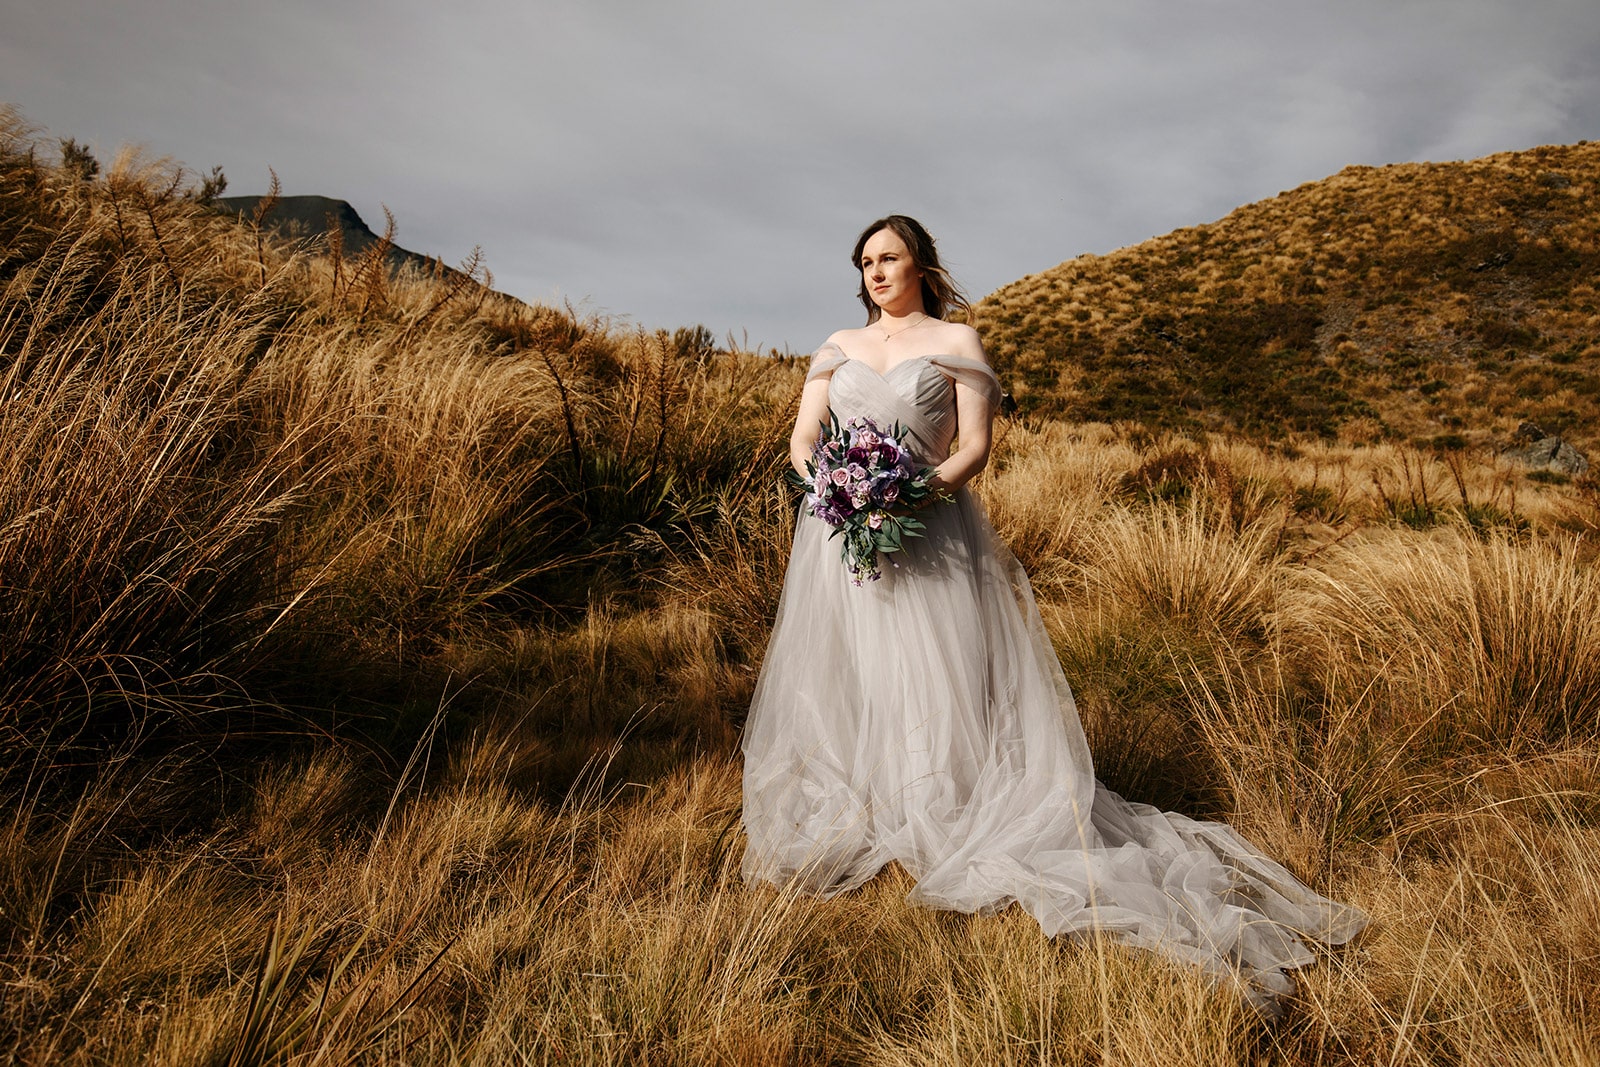 Heli Wedding in Queenstown at Lake Lochnagar